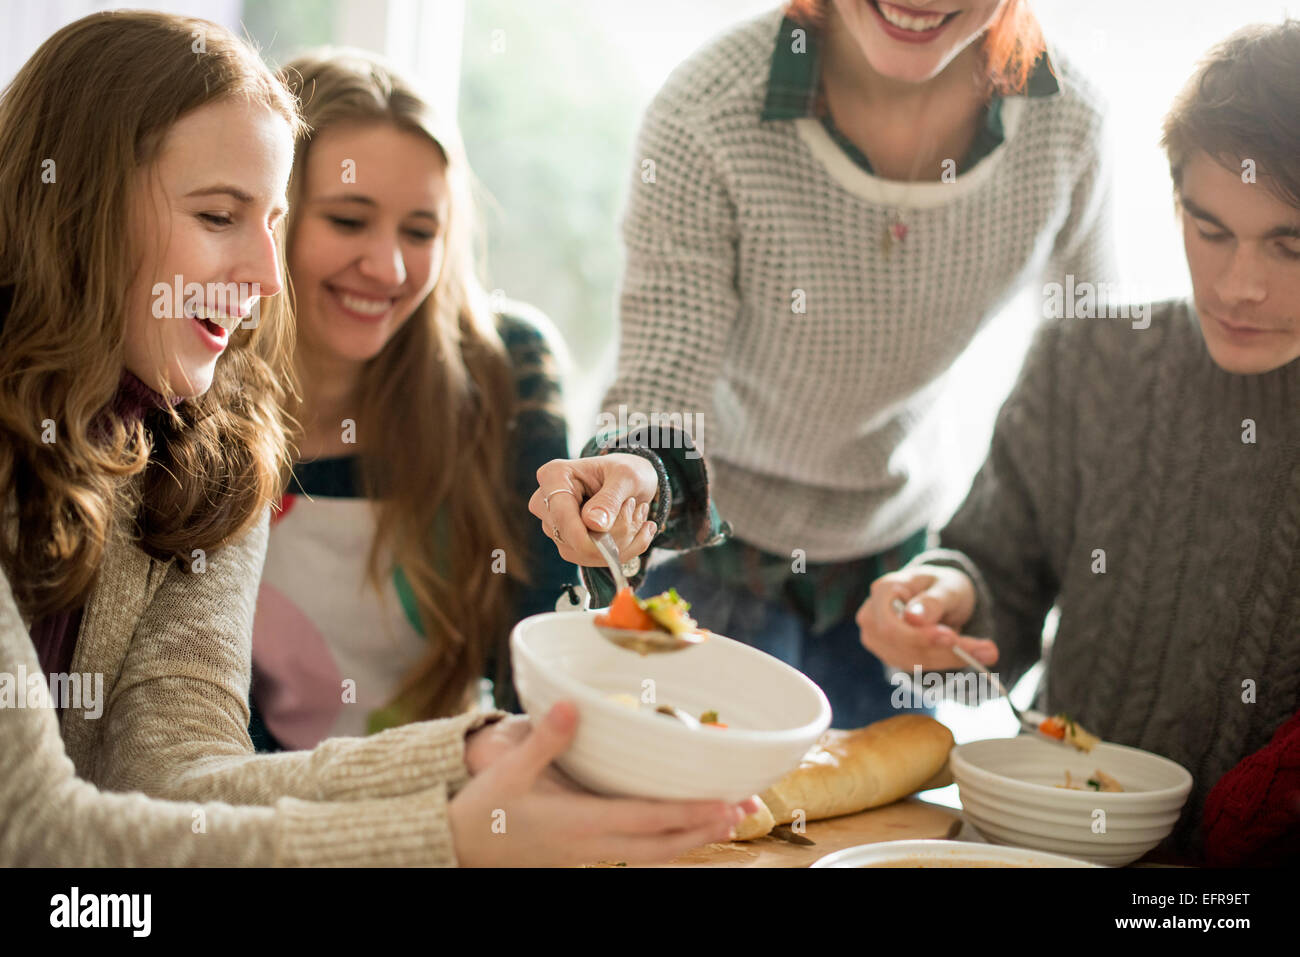 Vier Personen sitzen und stehen an einem Tisch, eine Frau mit Essen in eine Schüssel geben. Stockfoto